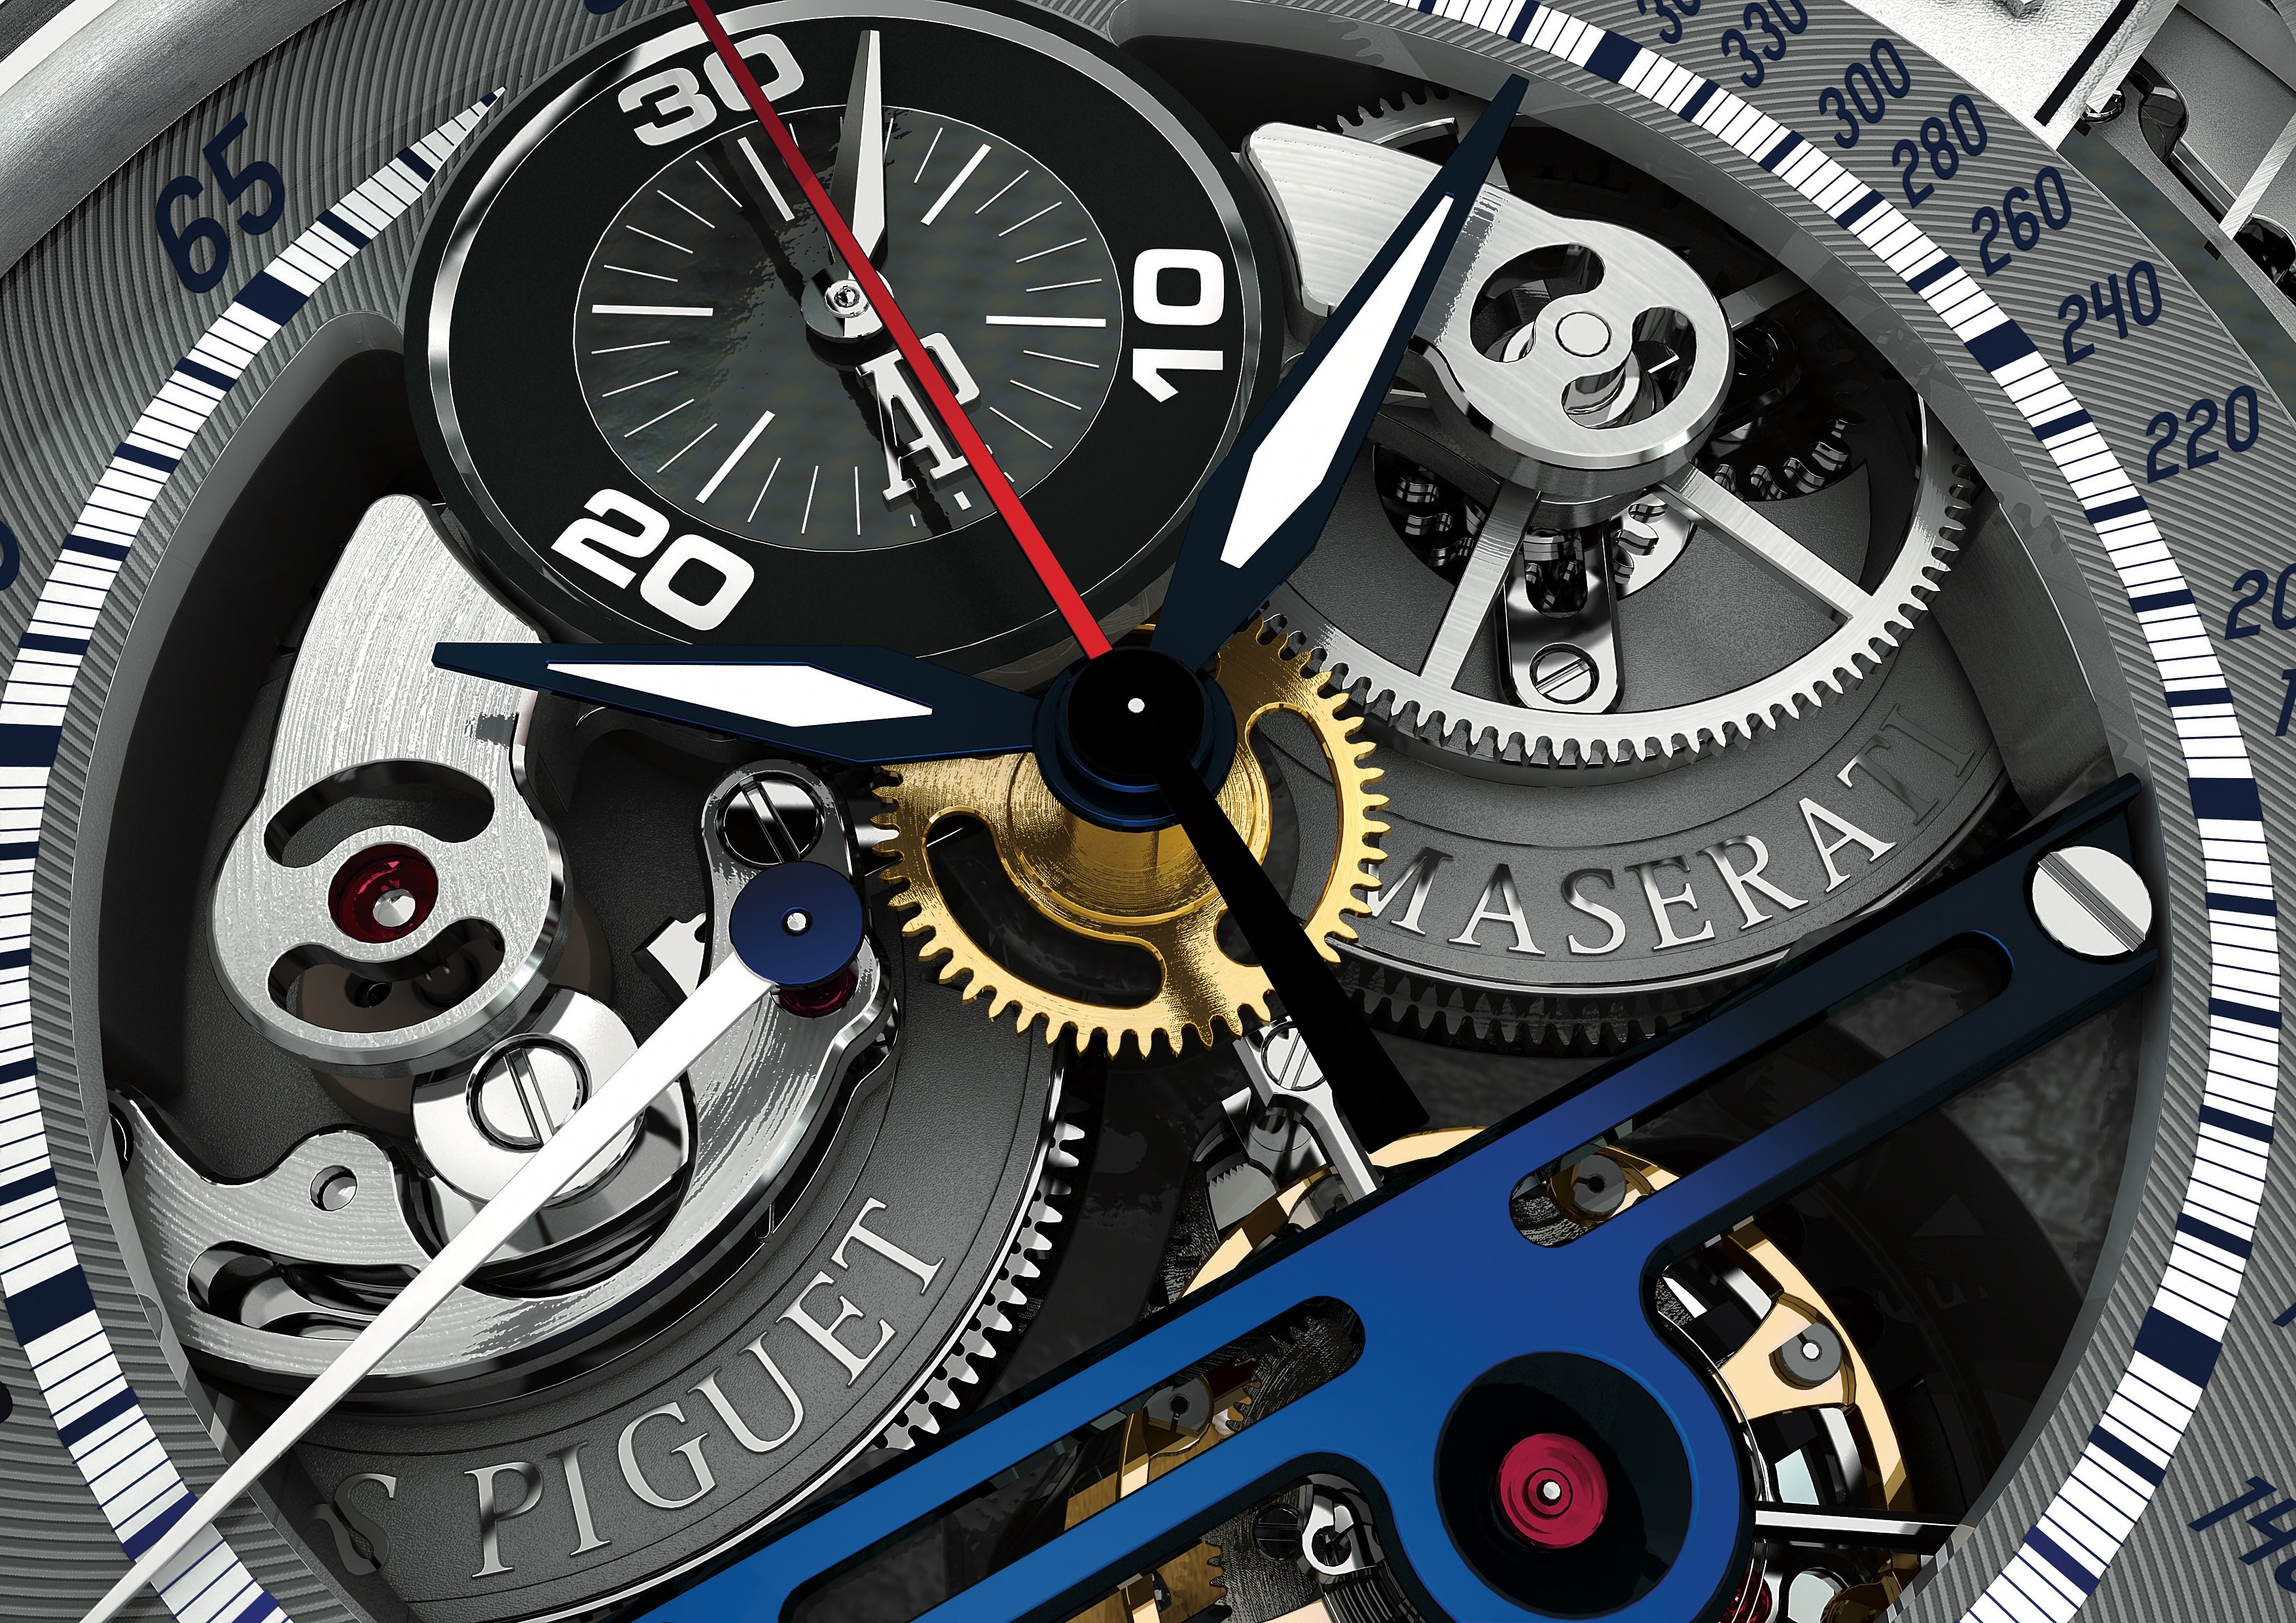 Лучший видеть часов. Millenary Maserati mc12 Tourbillon Chronograph. Необычные часы. Часы у которых видно механизм. Механизм часов название.